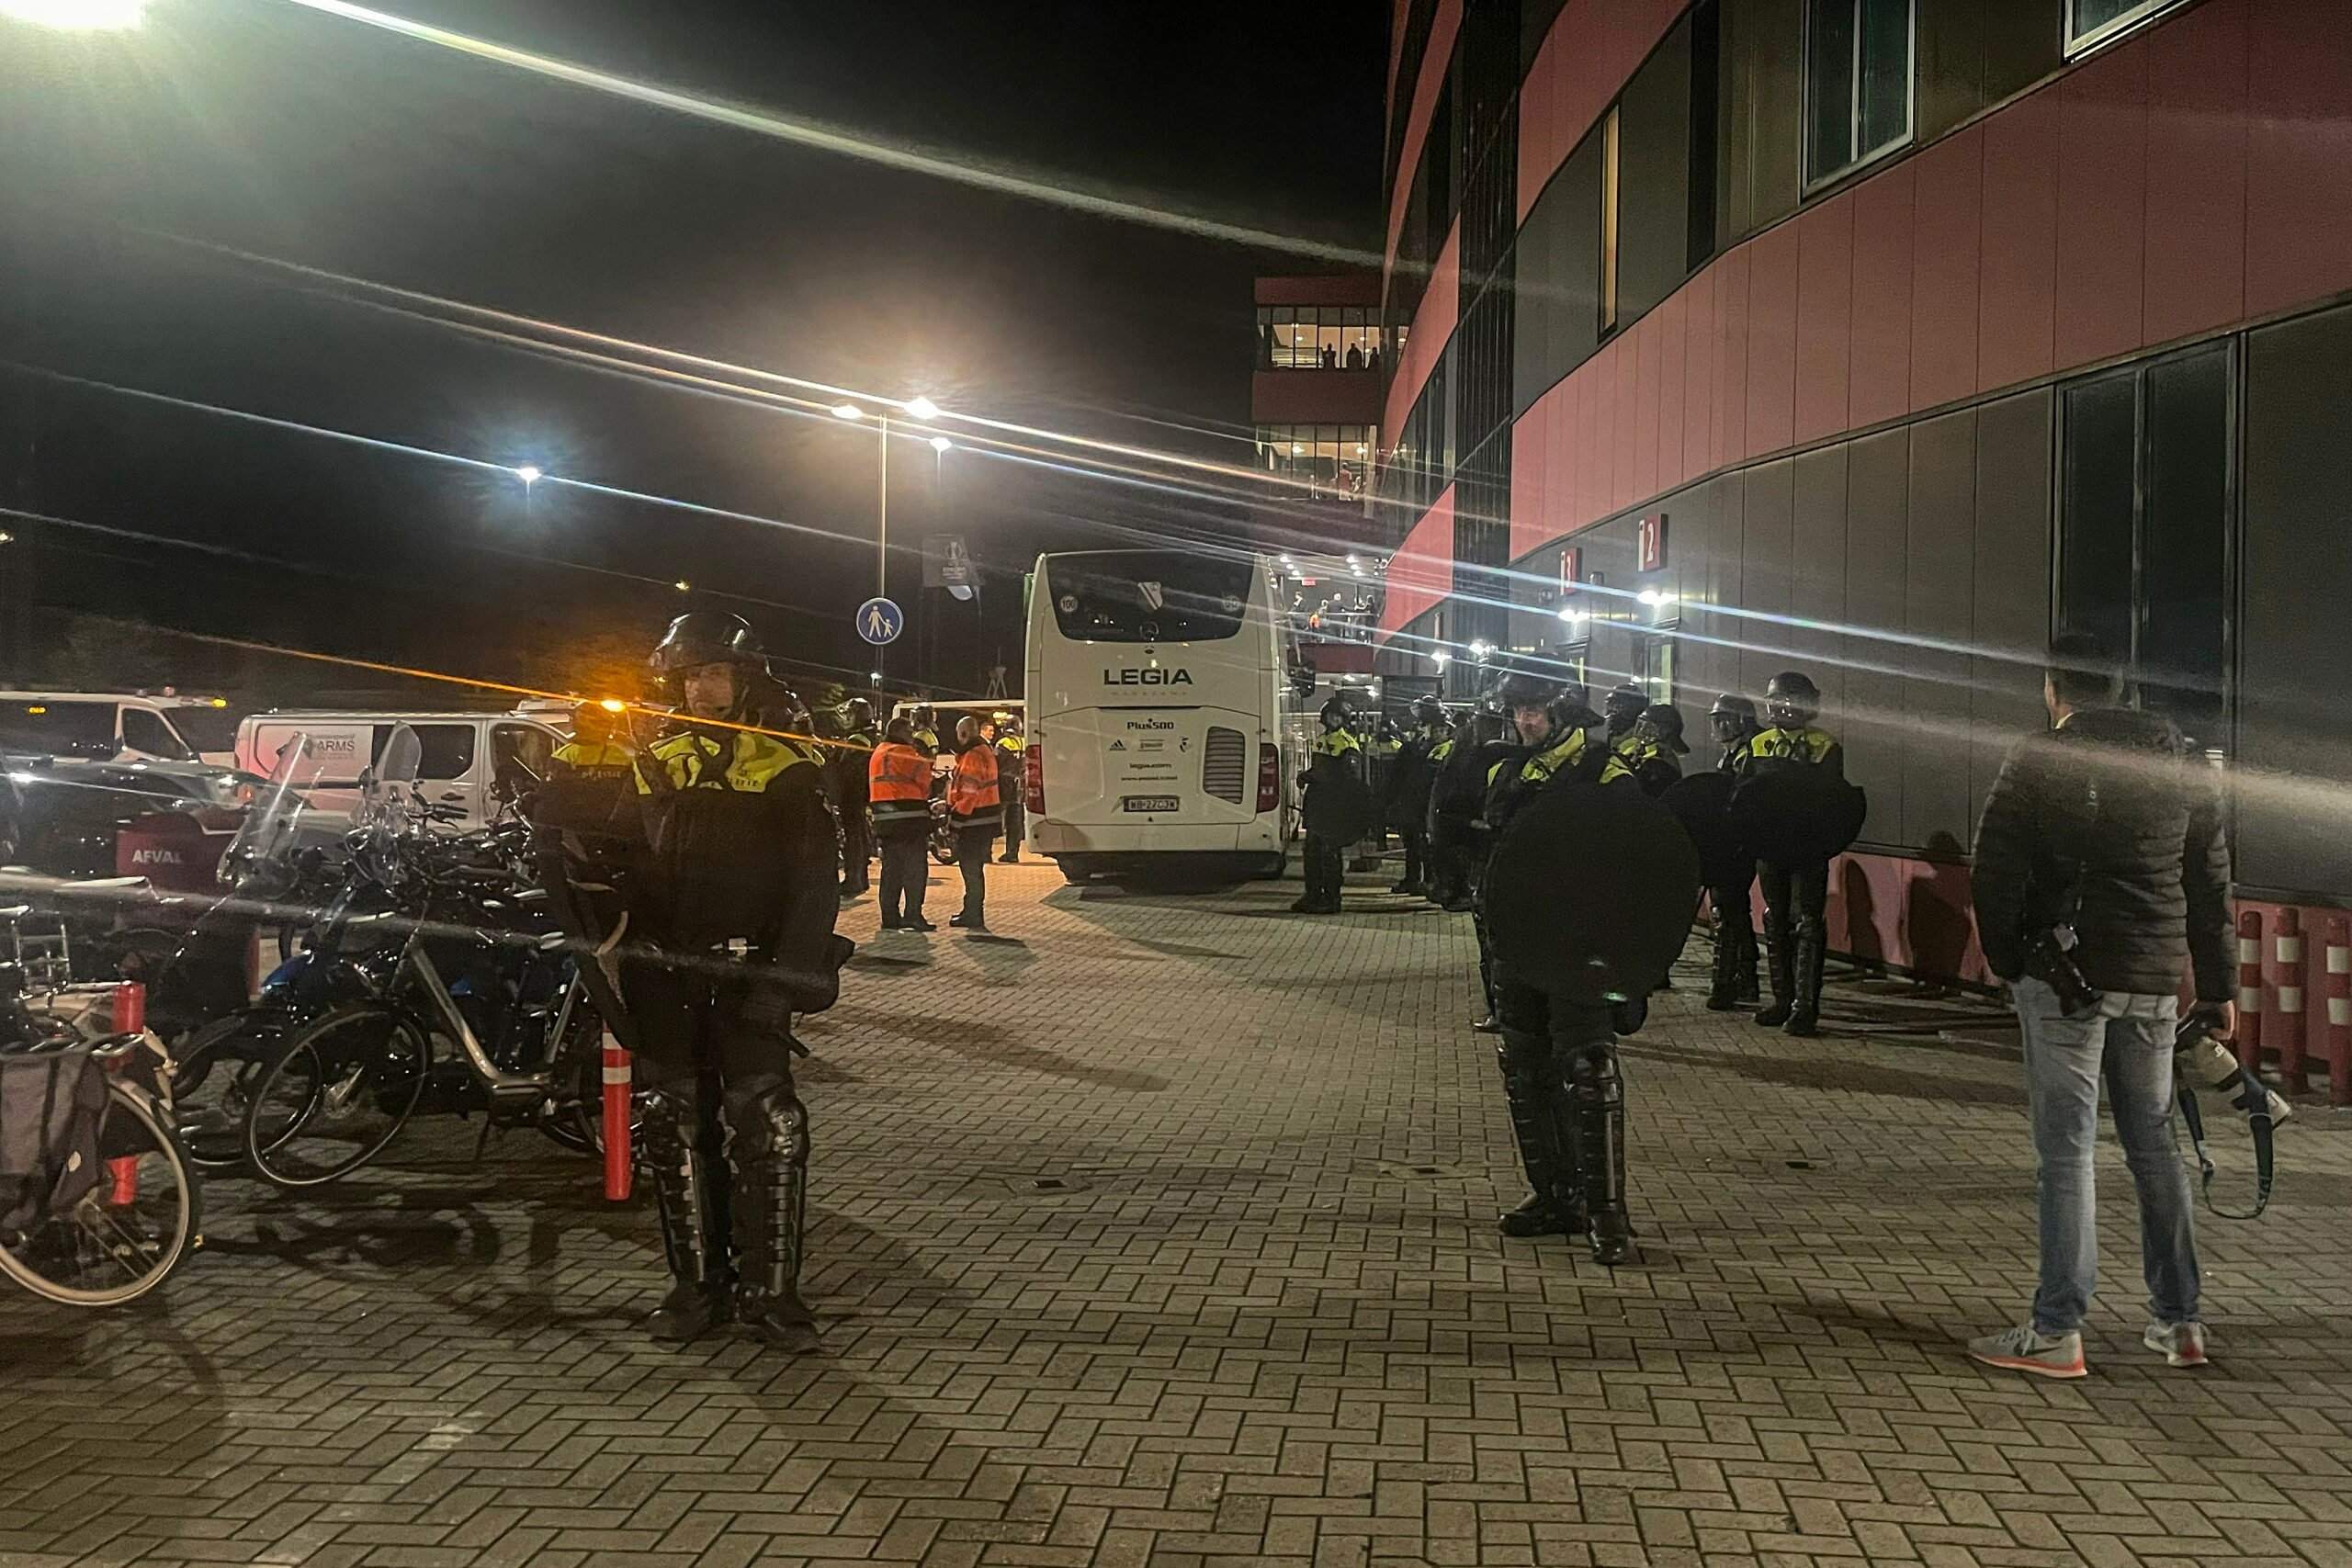 Systemowa polonofobia w Alkmaar. "Straszono, że jak ktoś pojawi się w centrum, idzie do aresztu" - weszlo.com